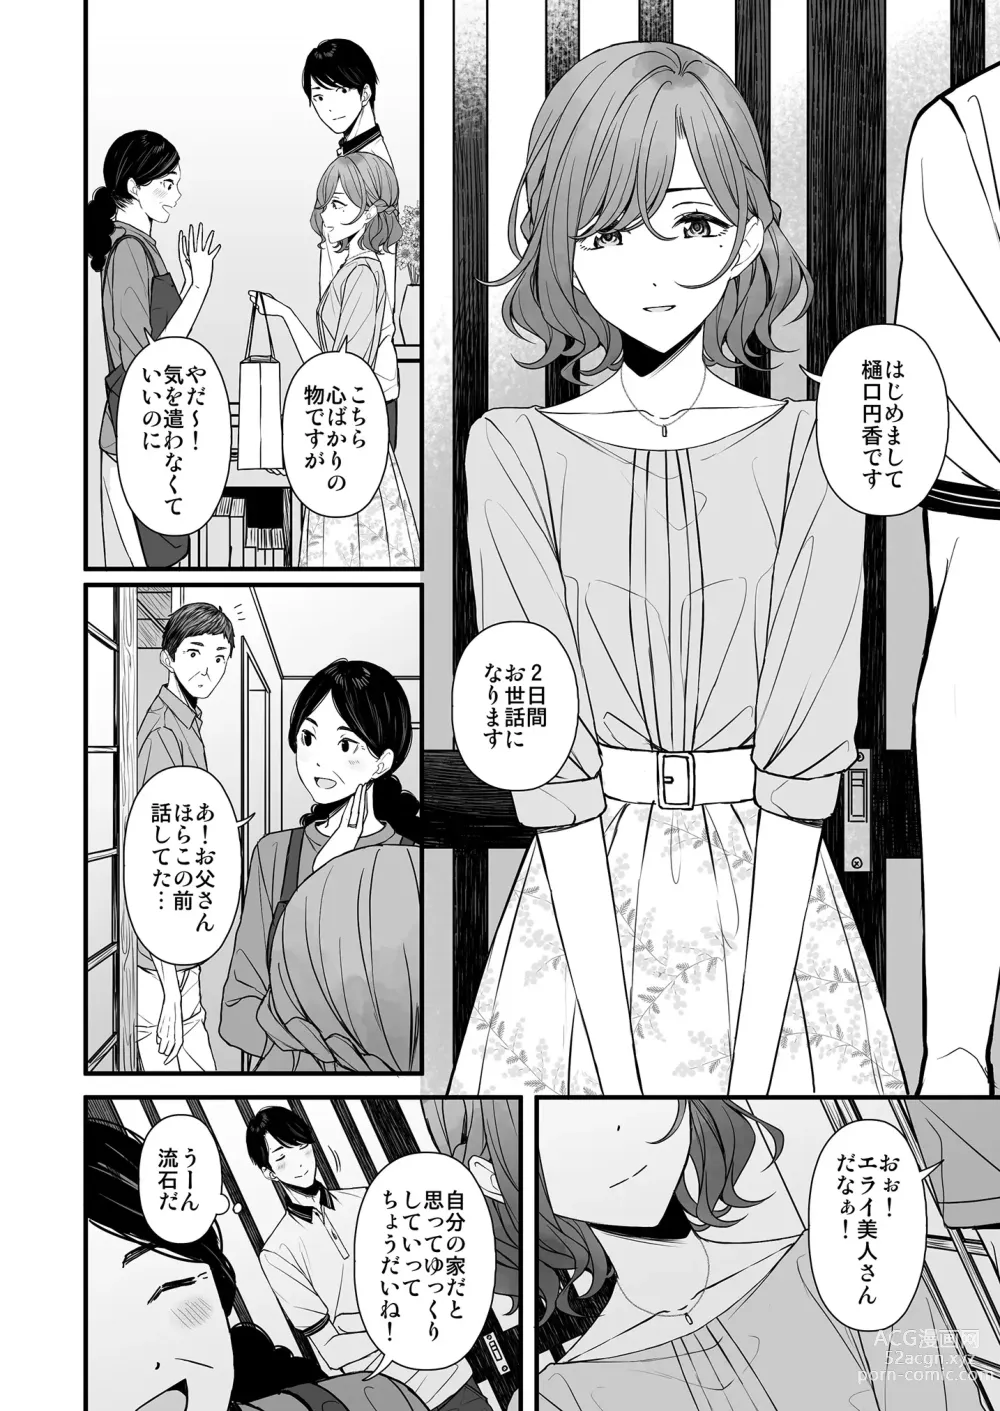 Page 3 of doujinshi Natsu no Yoru no Nostalgia